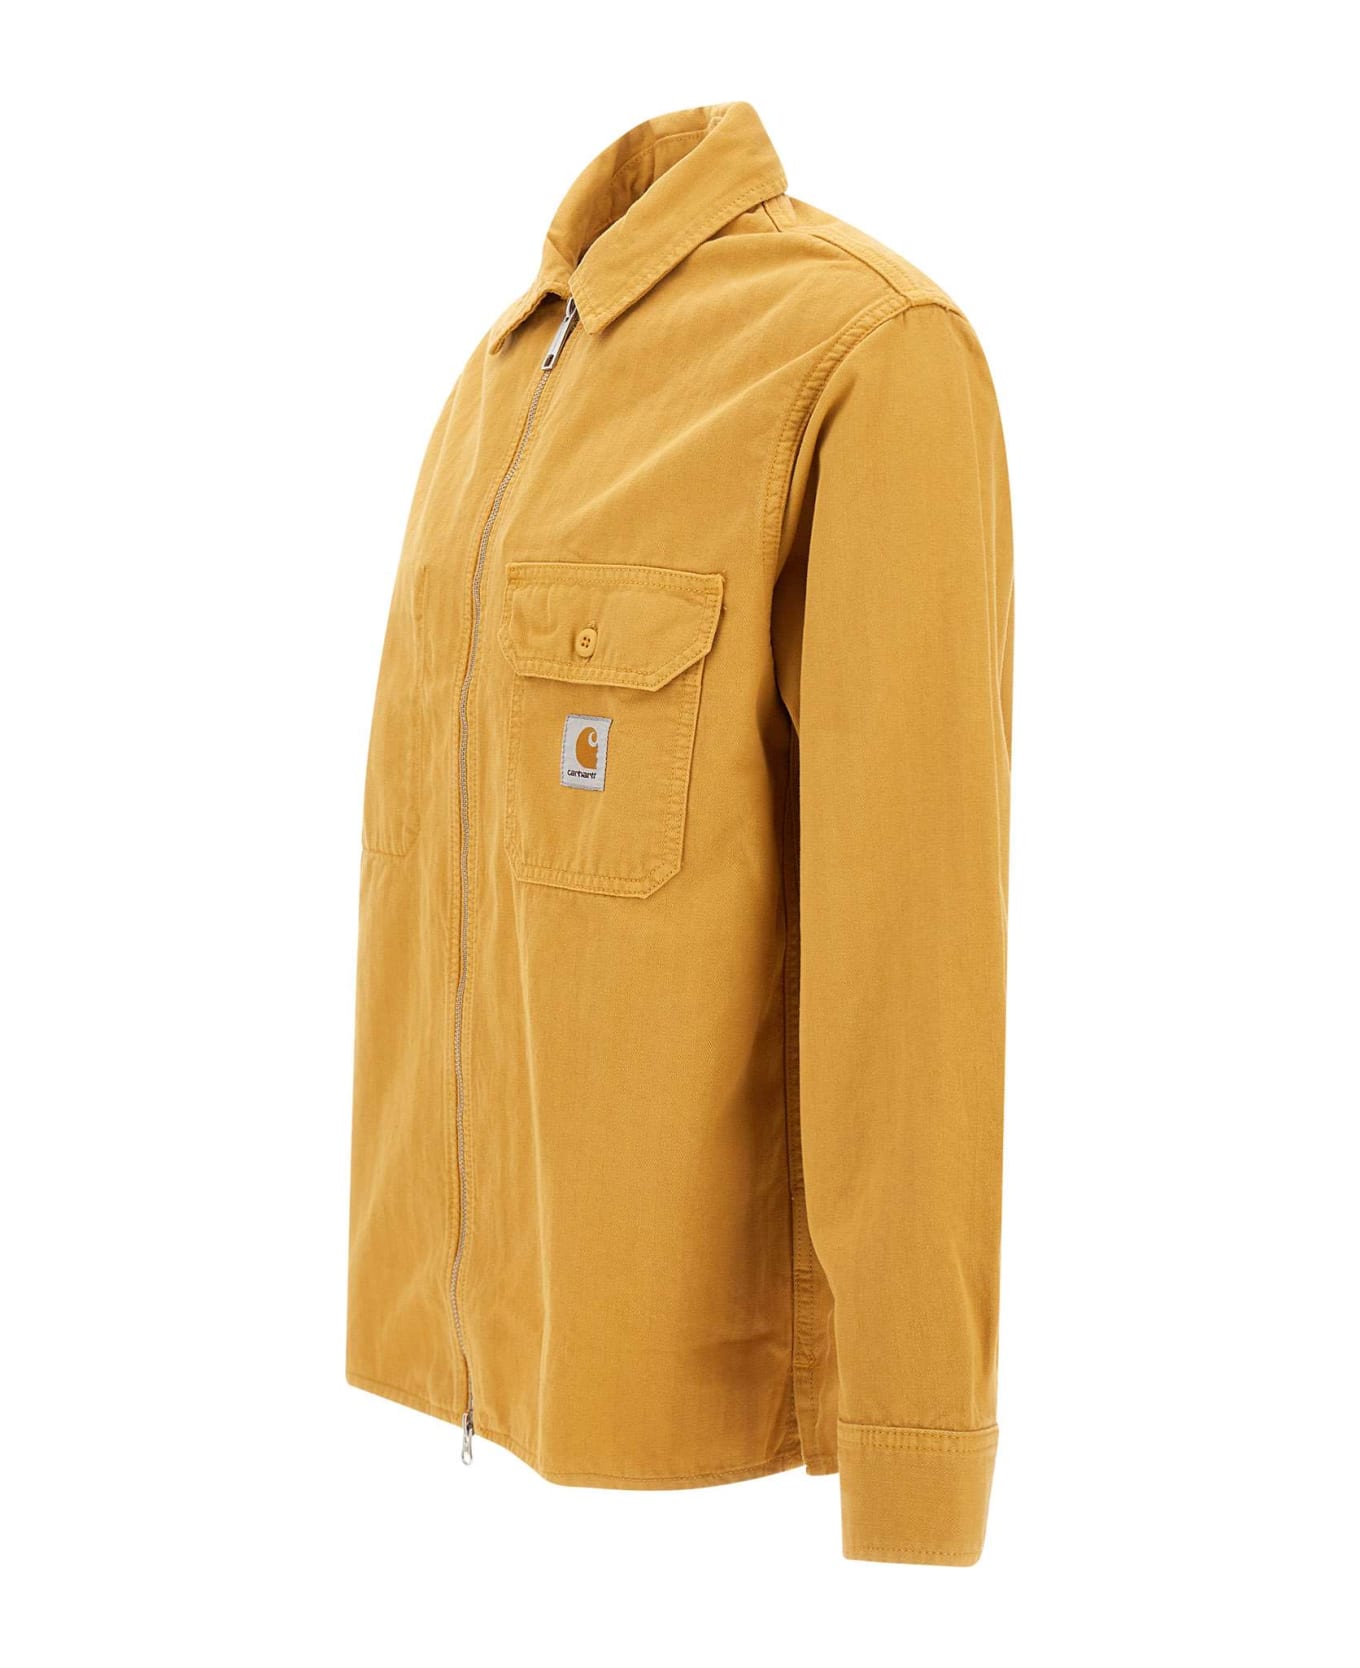 Carhartt 'rainer Shirt' Jacket - Ze.gd Sunray Garment Dyed